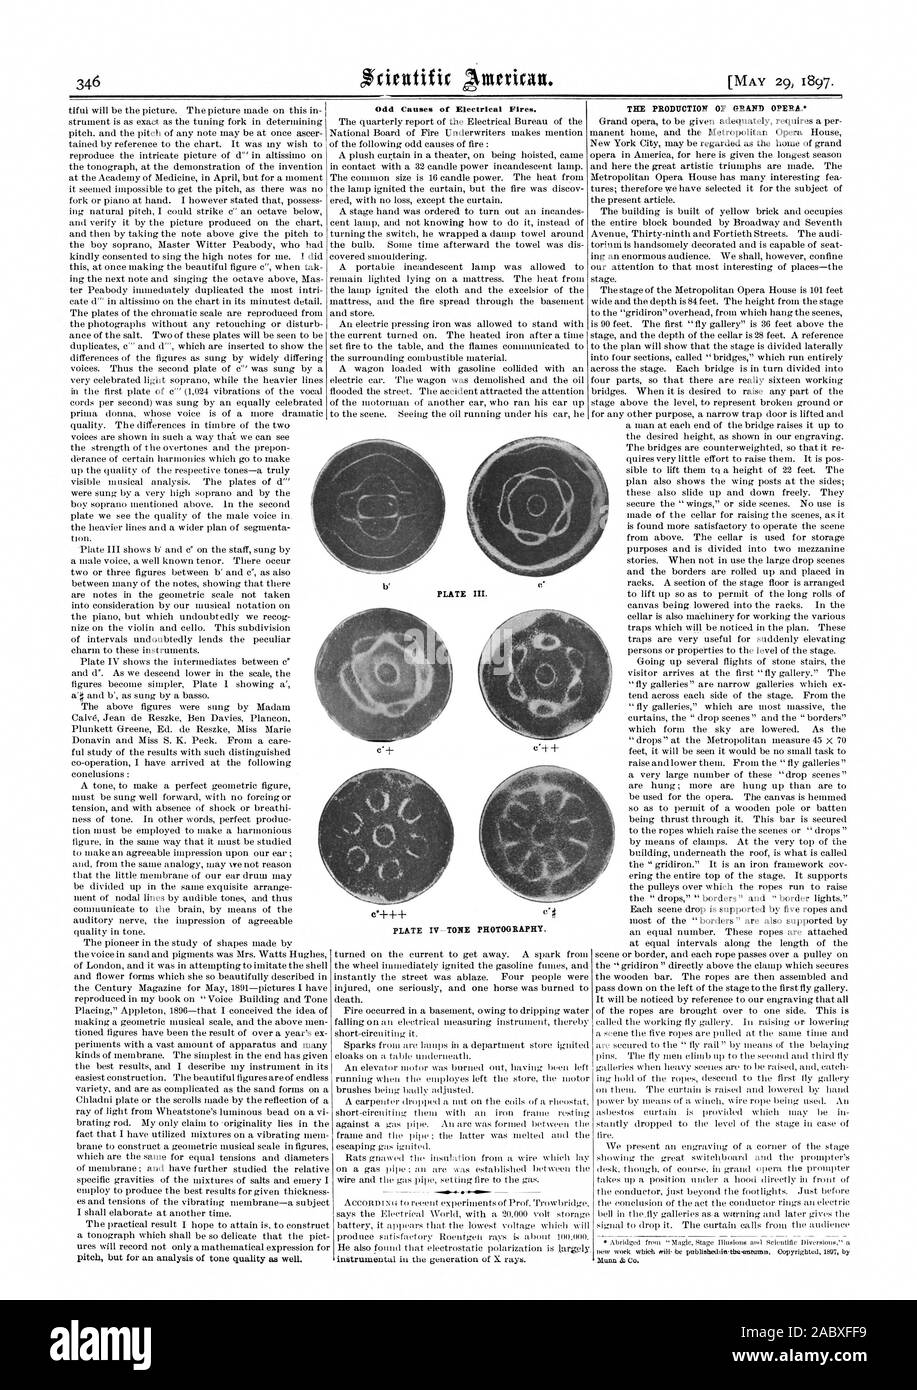 La production du grand opéra. Quelques causes de feux électriques. PLATE III. Tôles IV-TON LA PHOTOGRAPHIE., Scientific American, 1897-05-29 Banque D'Images